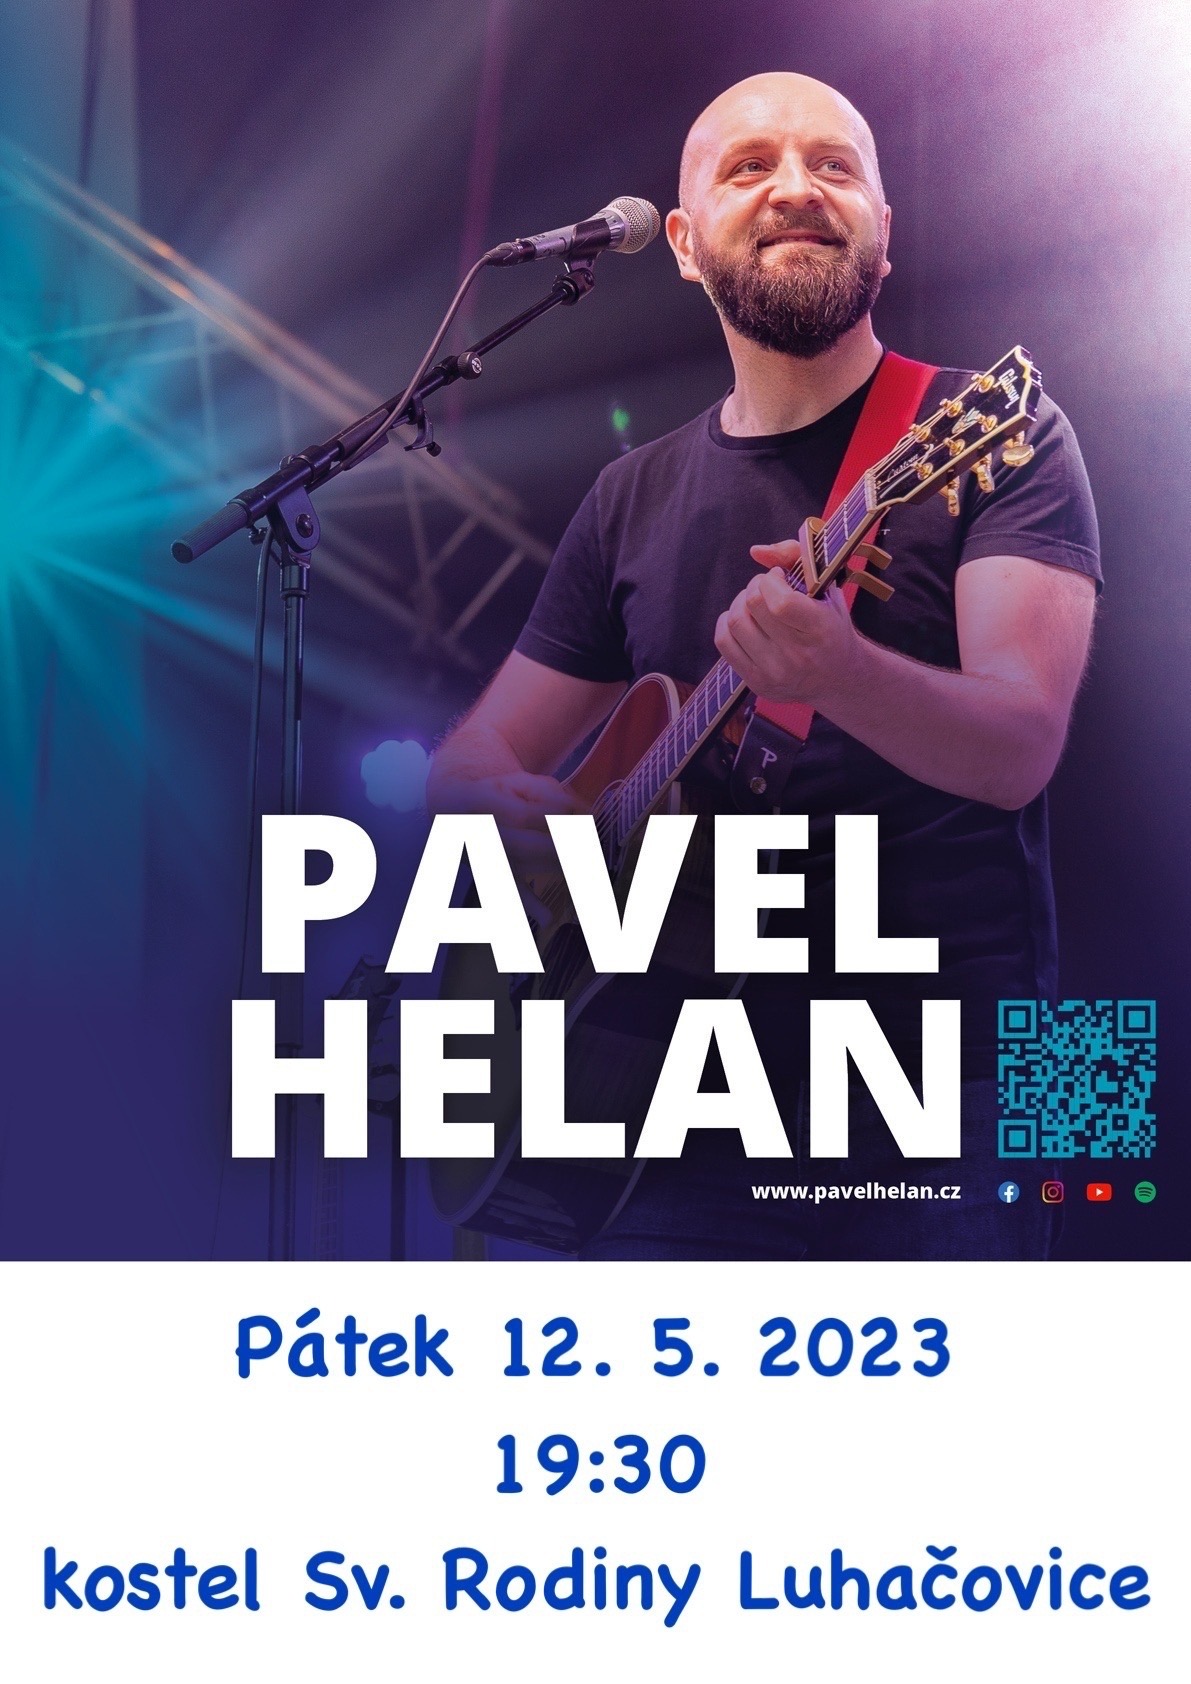 Pavel Helan - Luhačovice - 12.5.2023